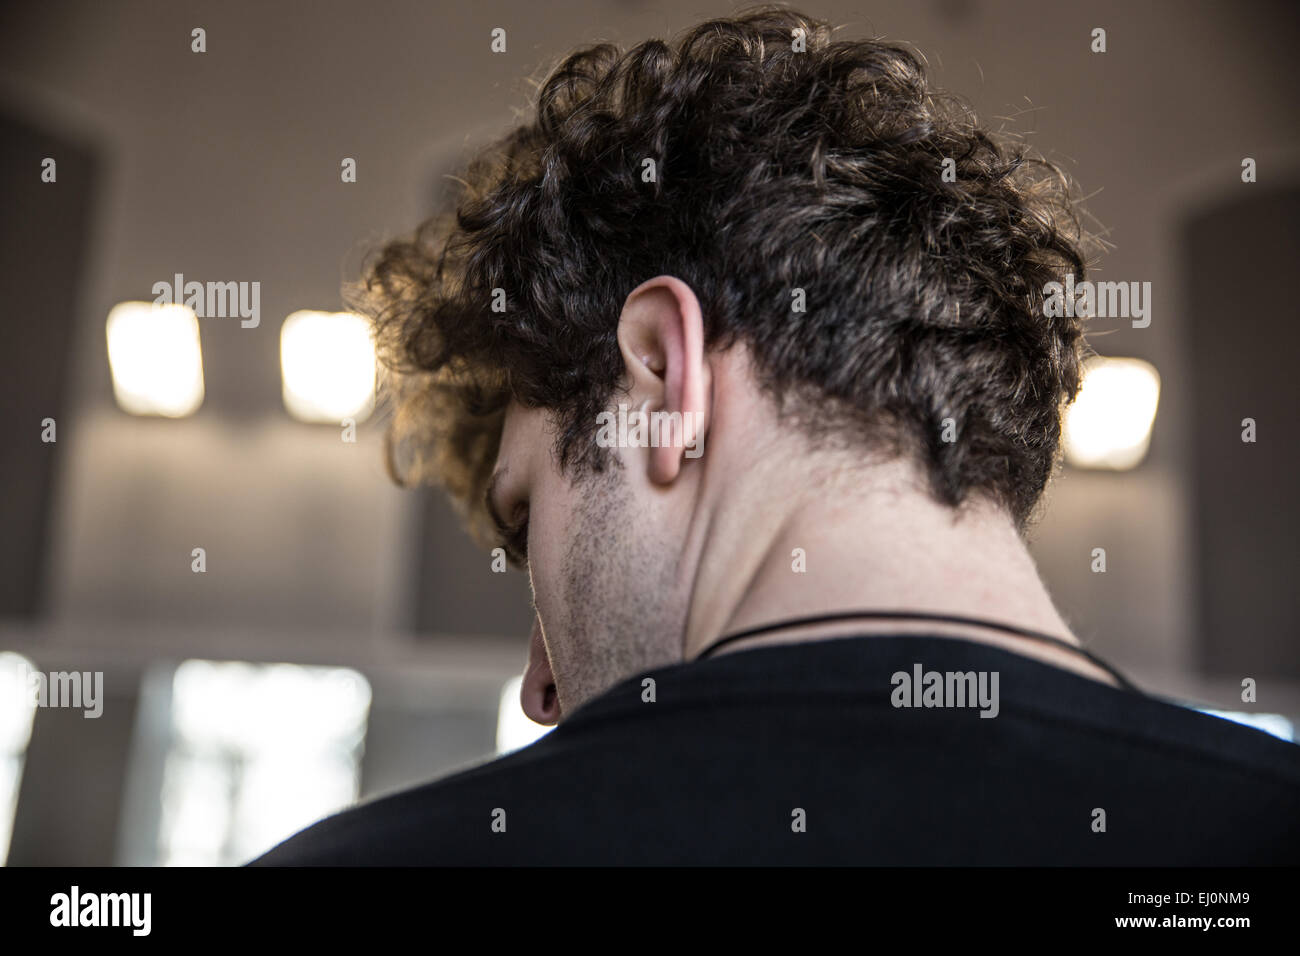 Vue arrière portrait d'un homme avec les cheveux bouclés Banque D'Images